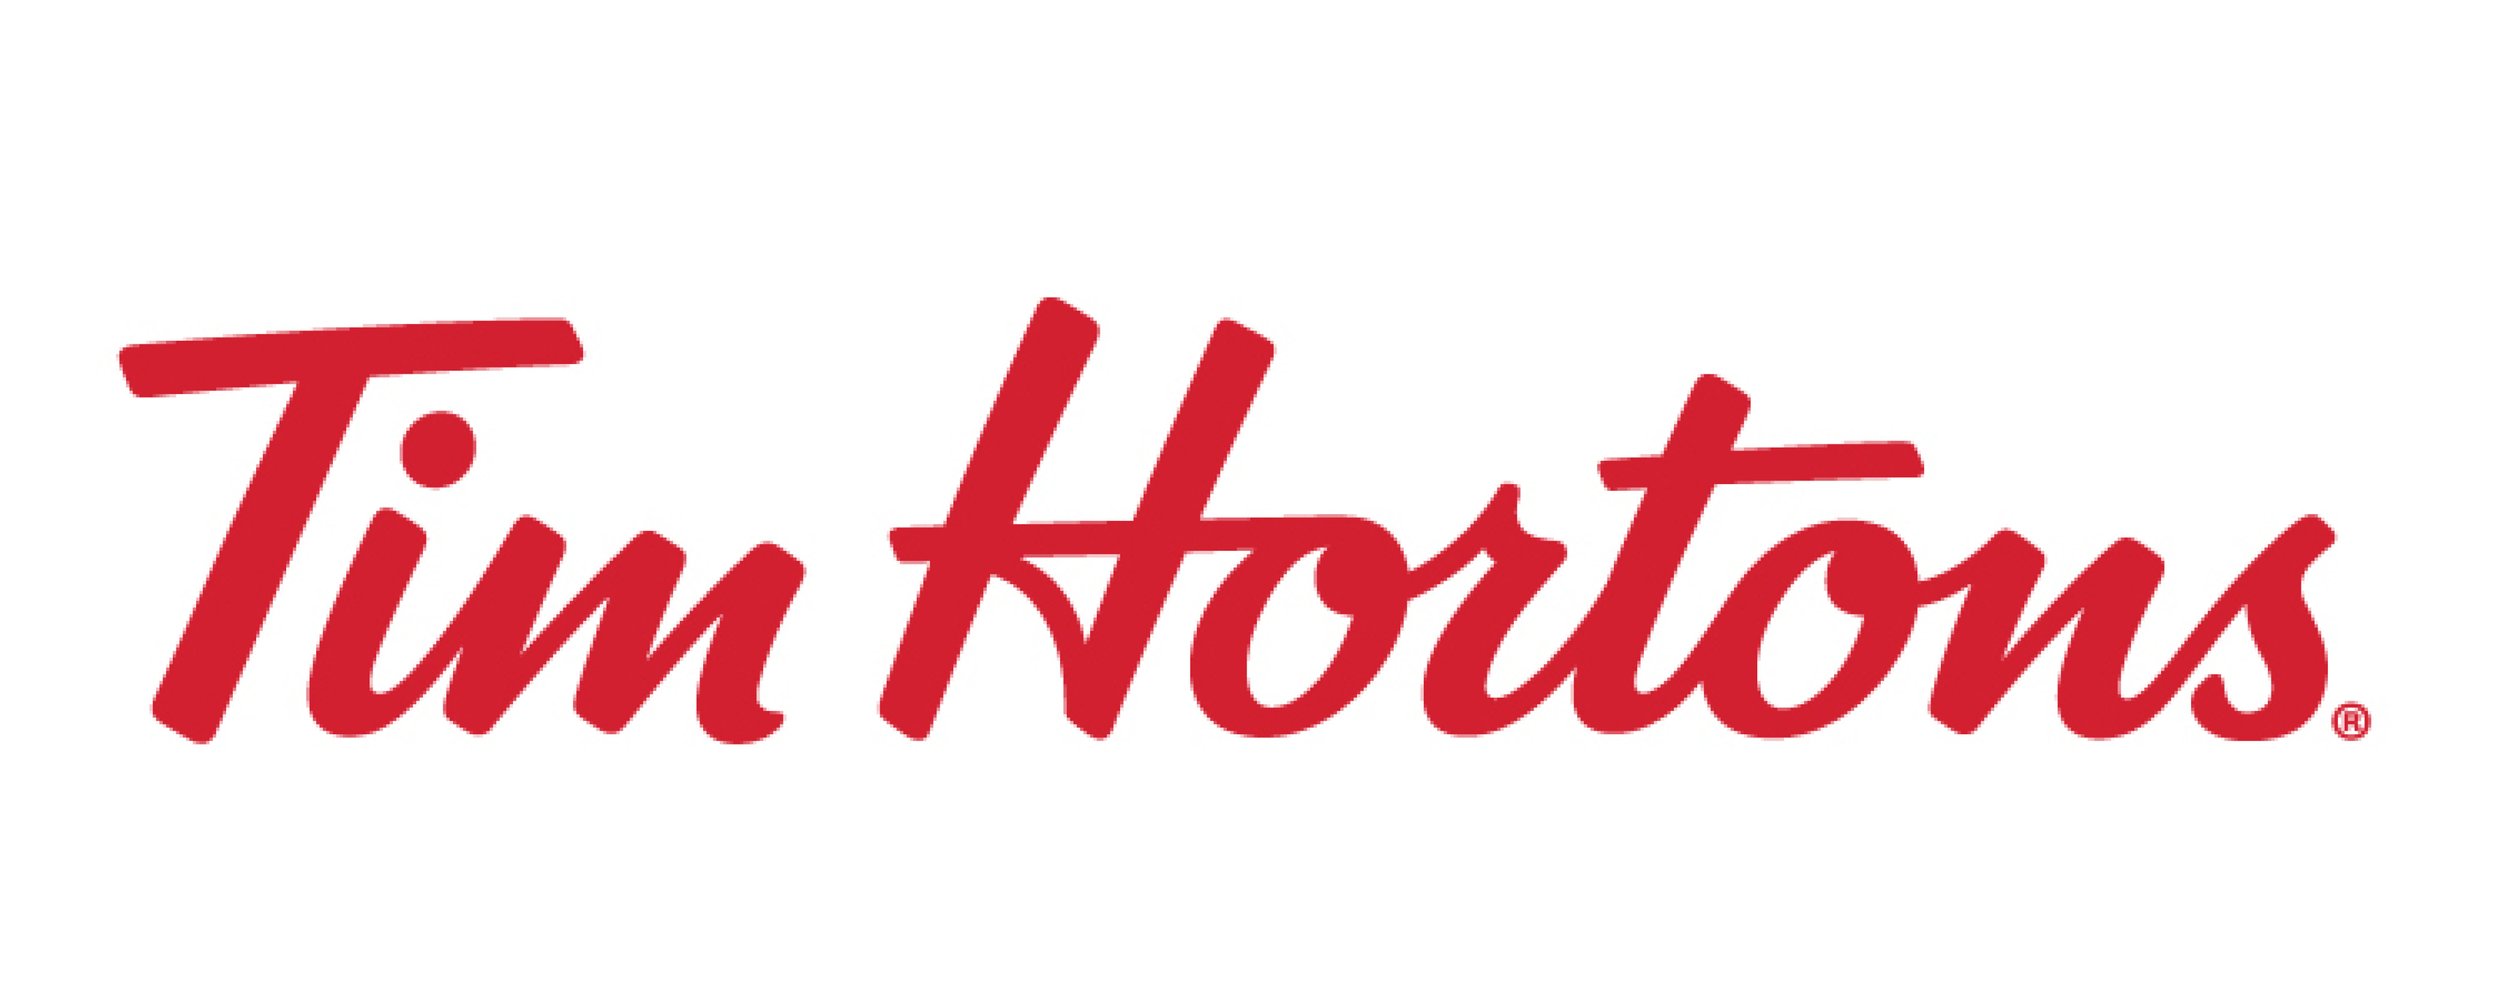 Tim-Hortons-Logo-NEW-v3.jpg